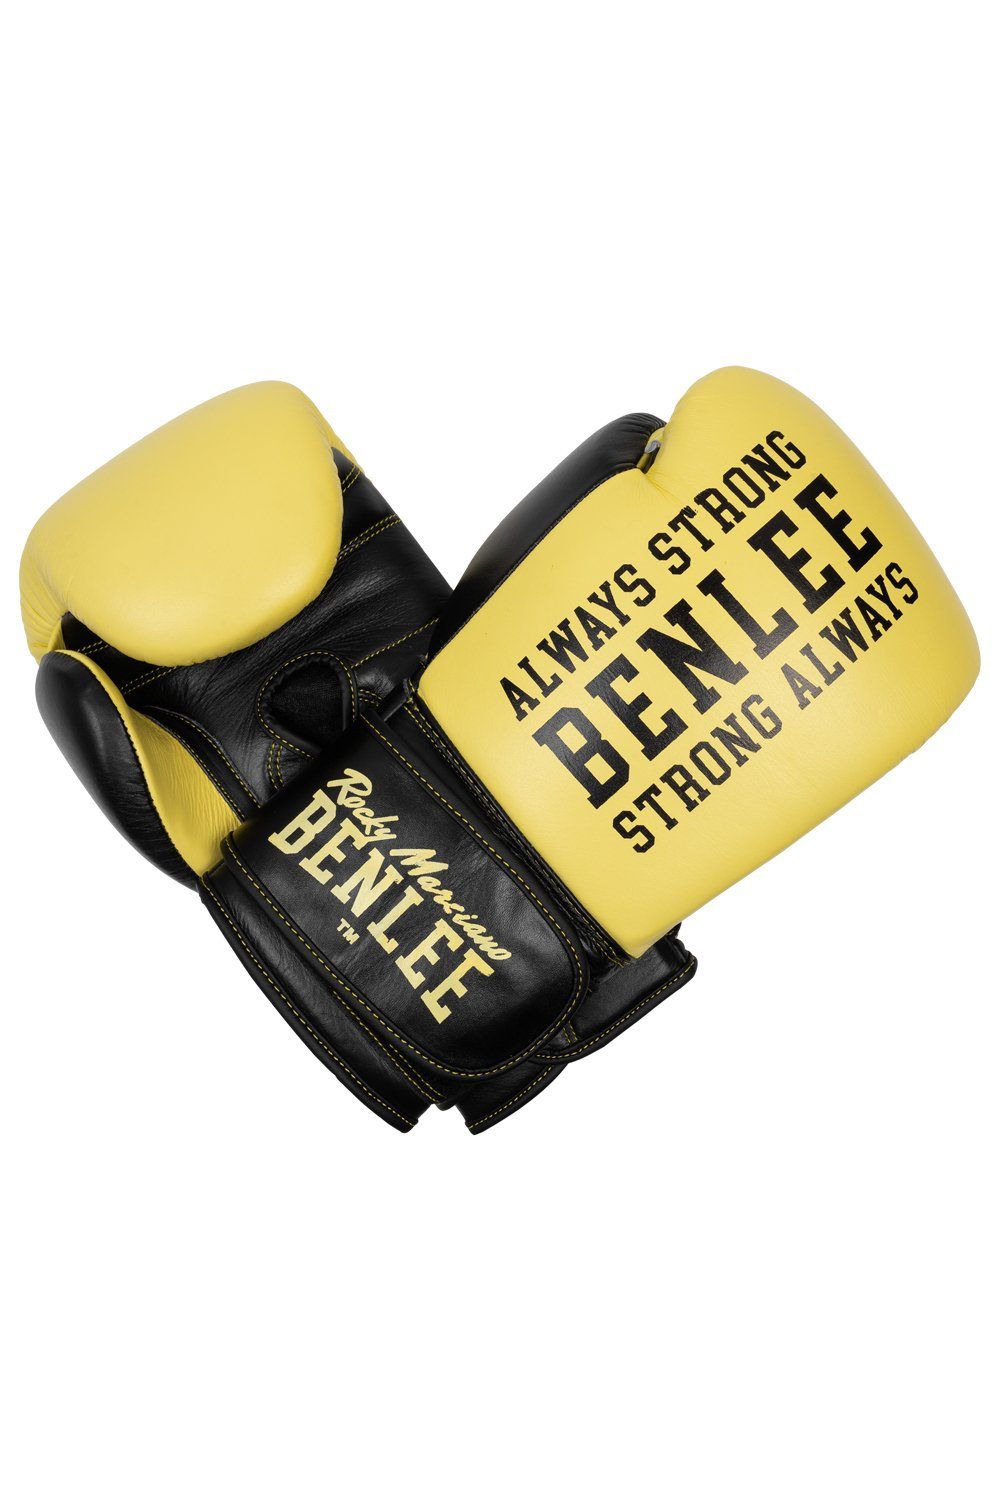 Benlee Rocky Marciano Boxhandschuhe HARDWOOD Yellow/Black